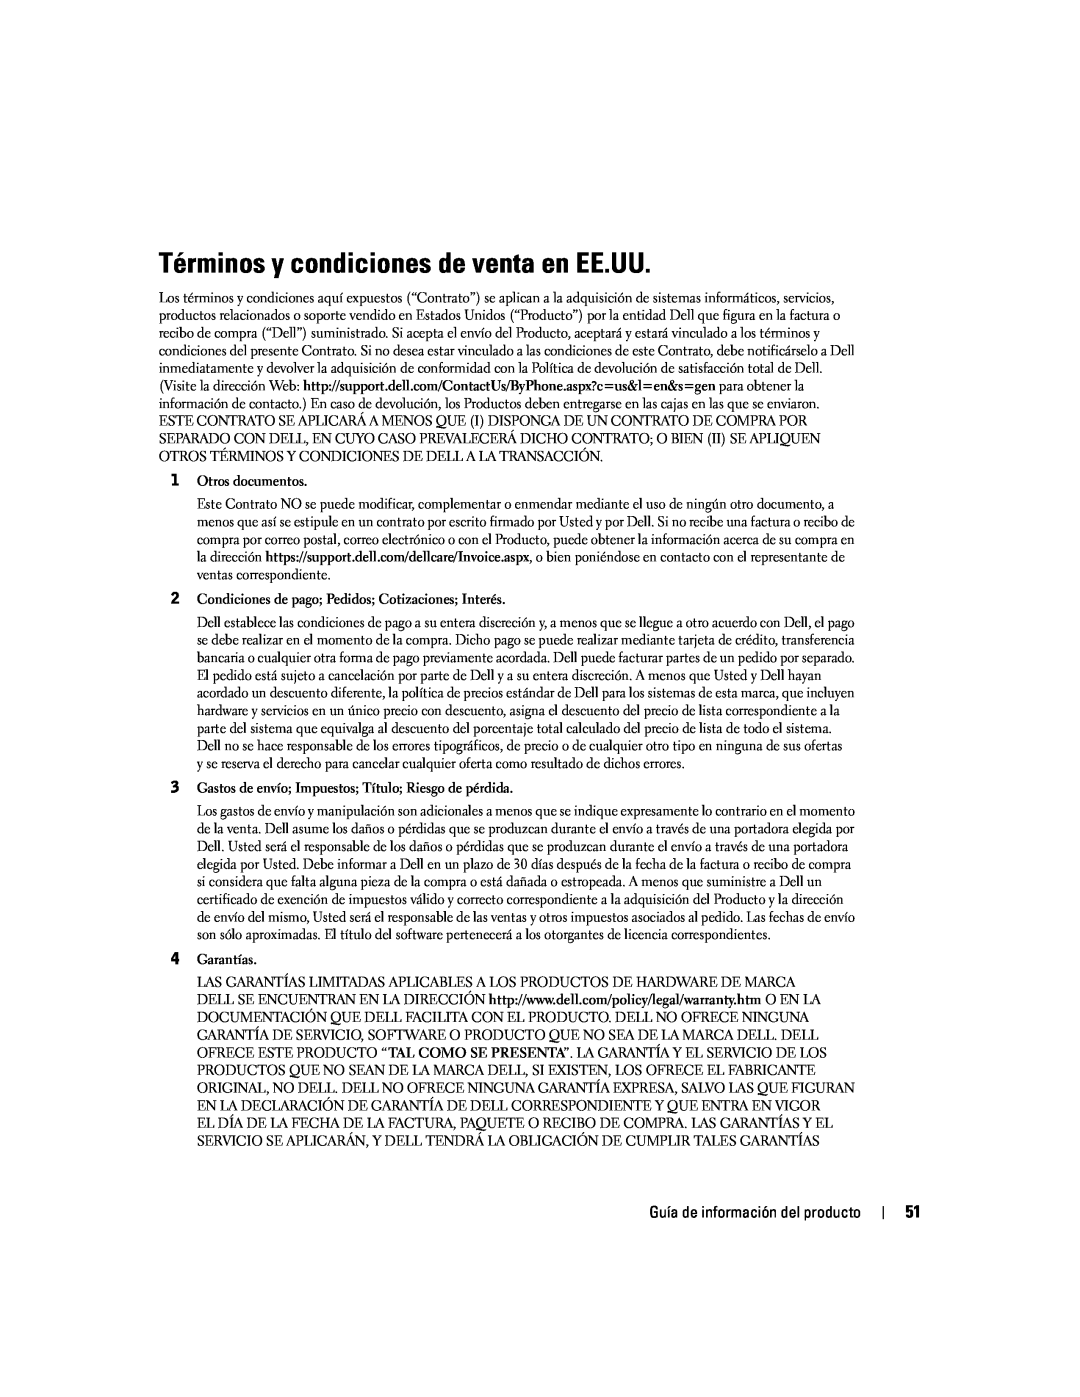 Dell W4200 Términos y condiciones de venta en EE.UU, Otros documentos, Condiciones de pago Pedidos Cotizaciones Interés 